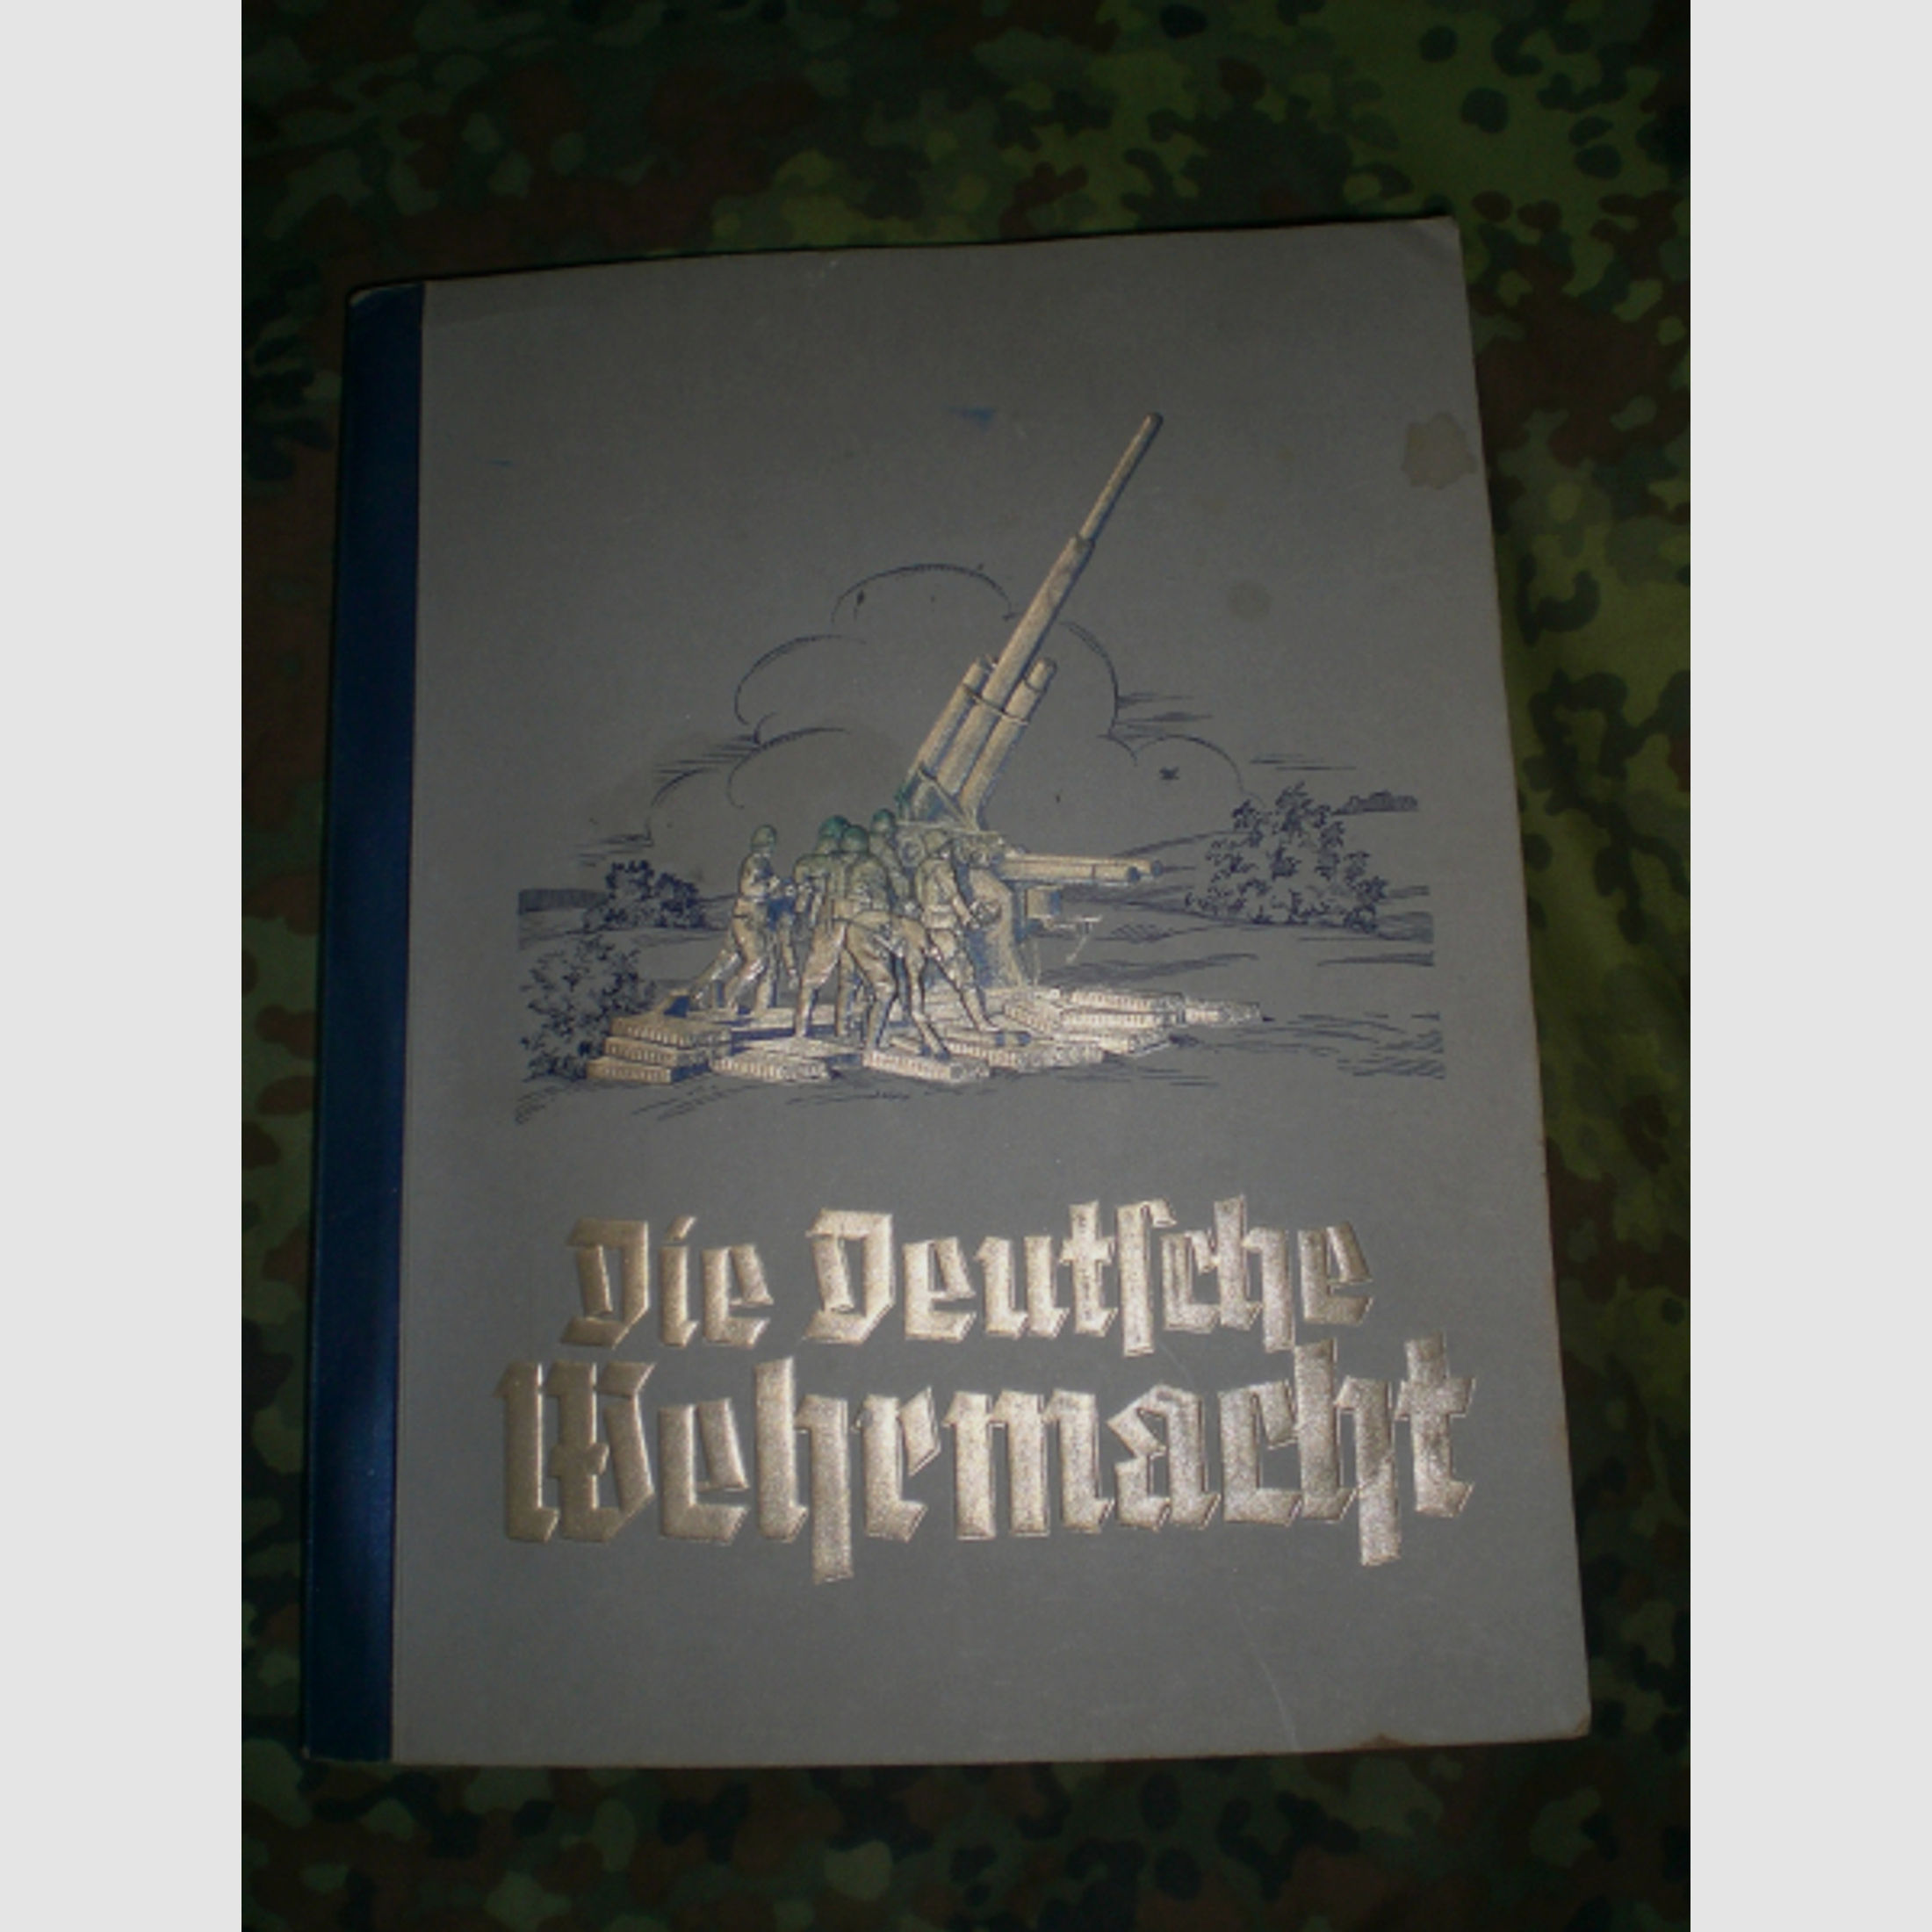 Antiquarisches Buch: altes Sammelbilderalbum - Die Deutsche Wehrmacht